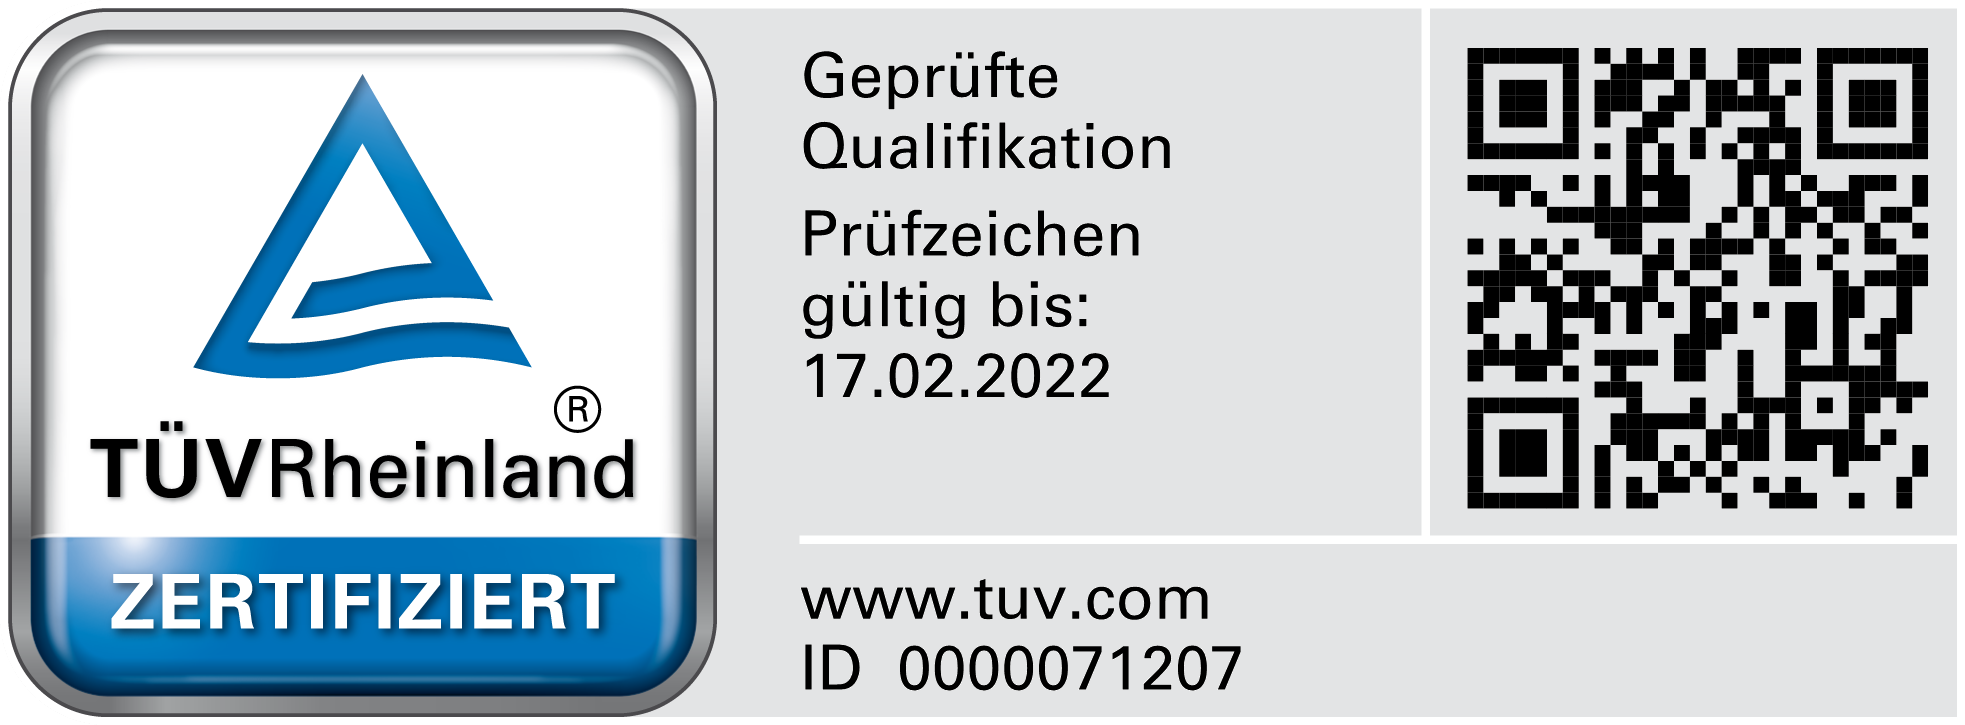 TÜV Rheinland zertifizierte Qualifikation